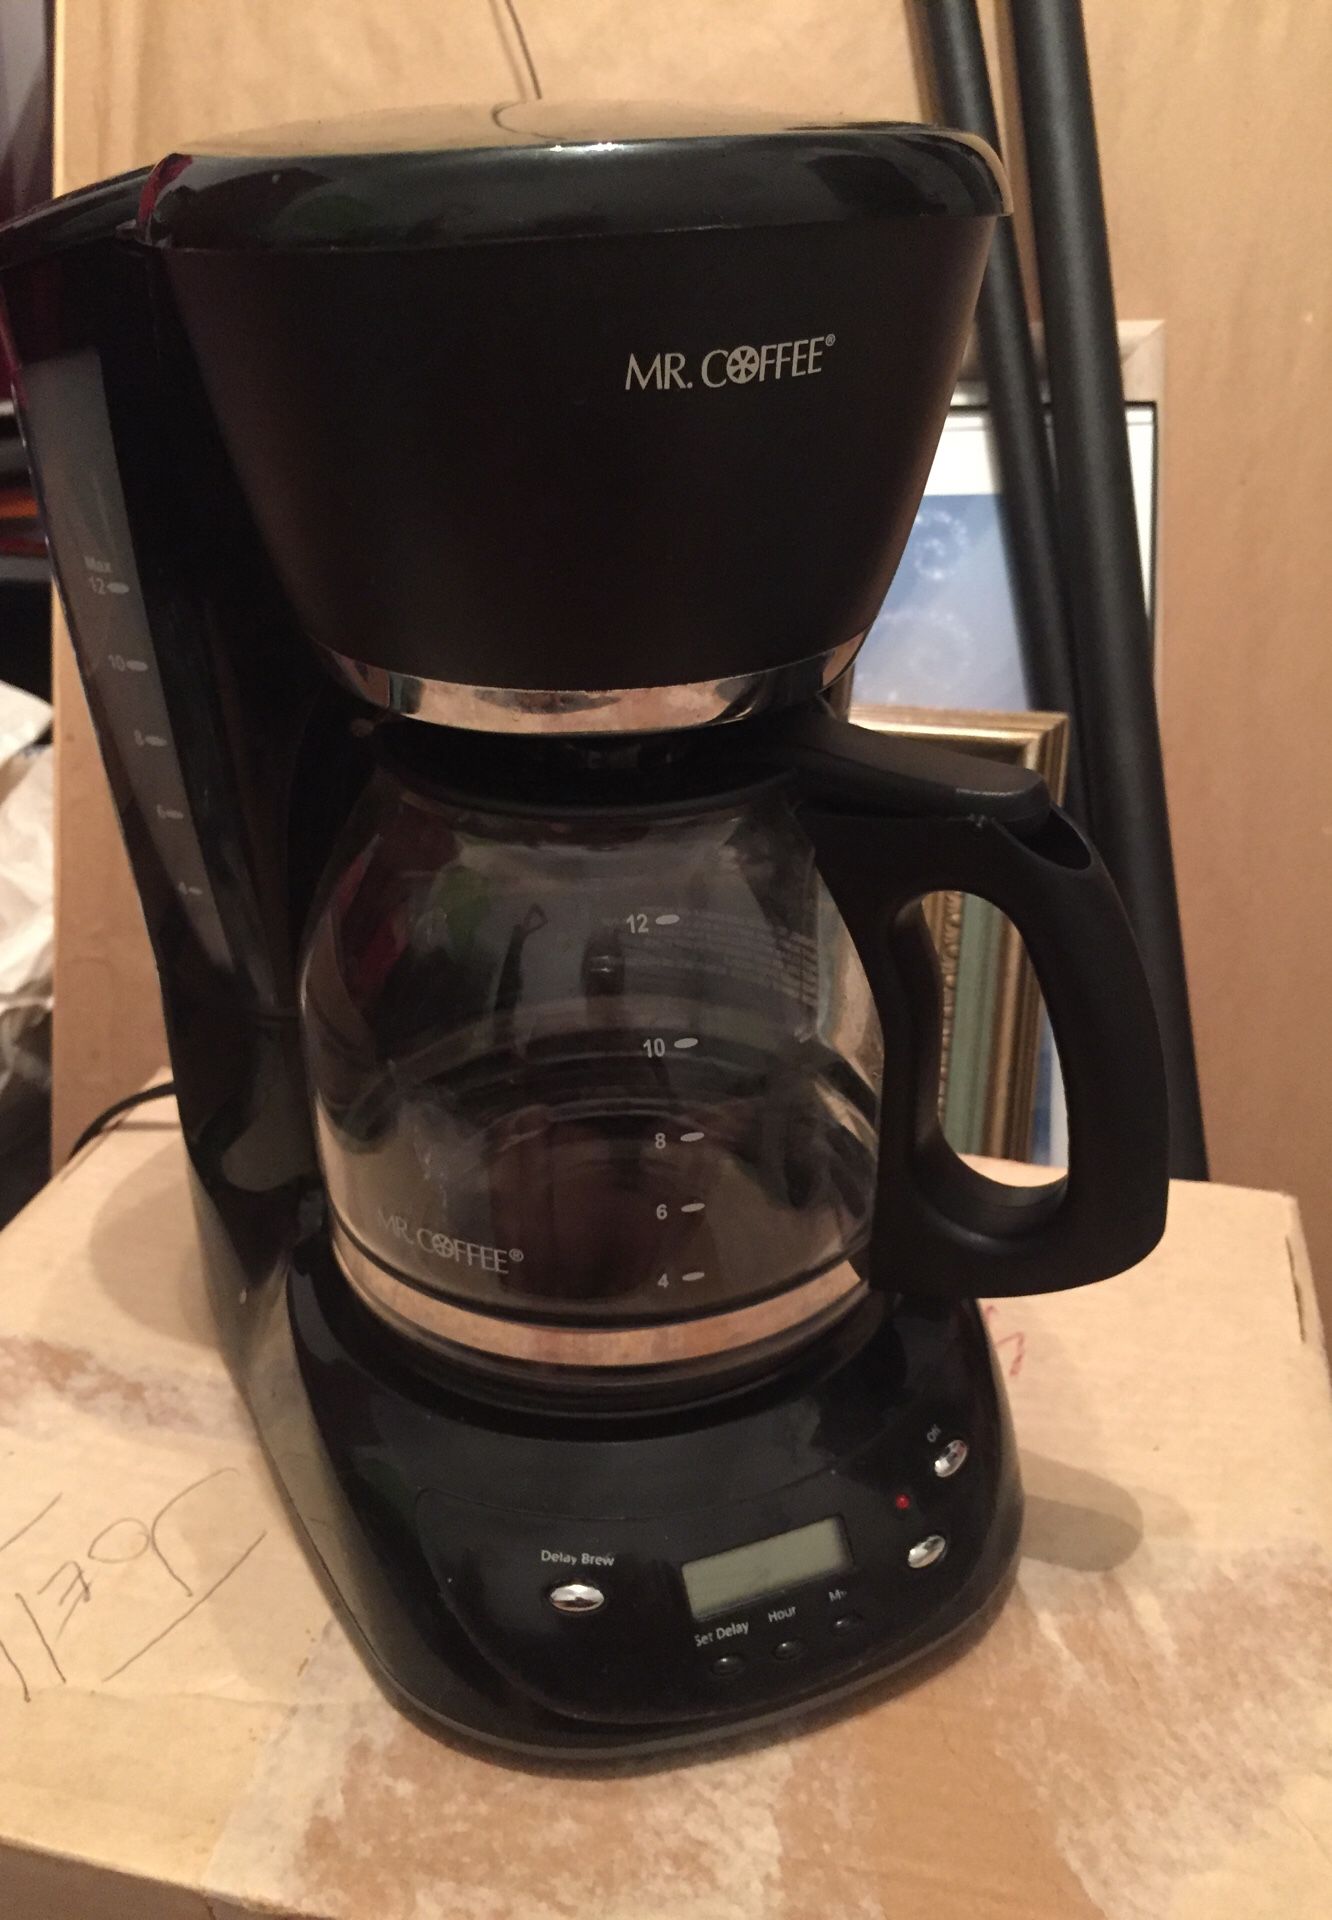 Mr. coffee programmable coffee maker